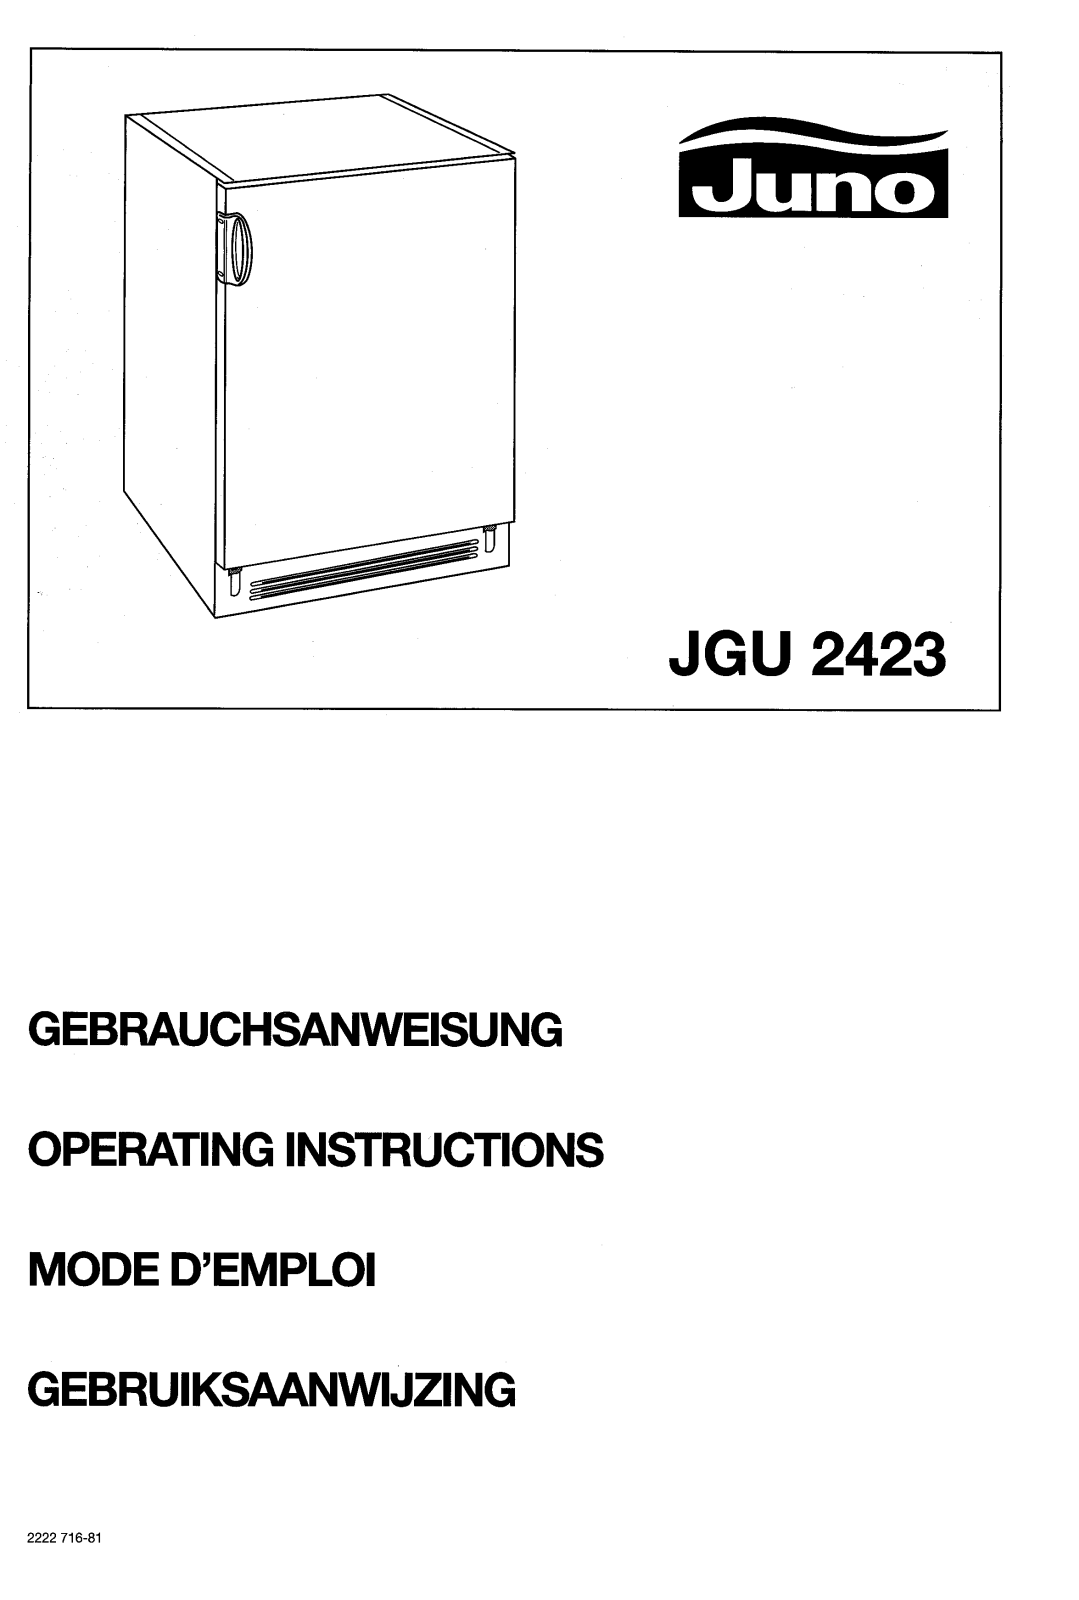 Juno JGU 2423 User Manual